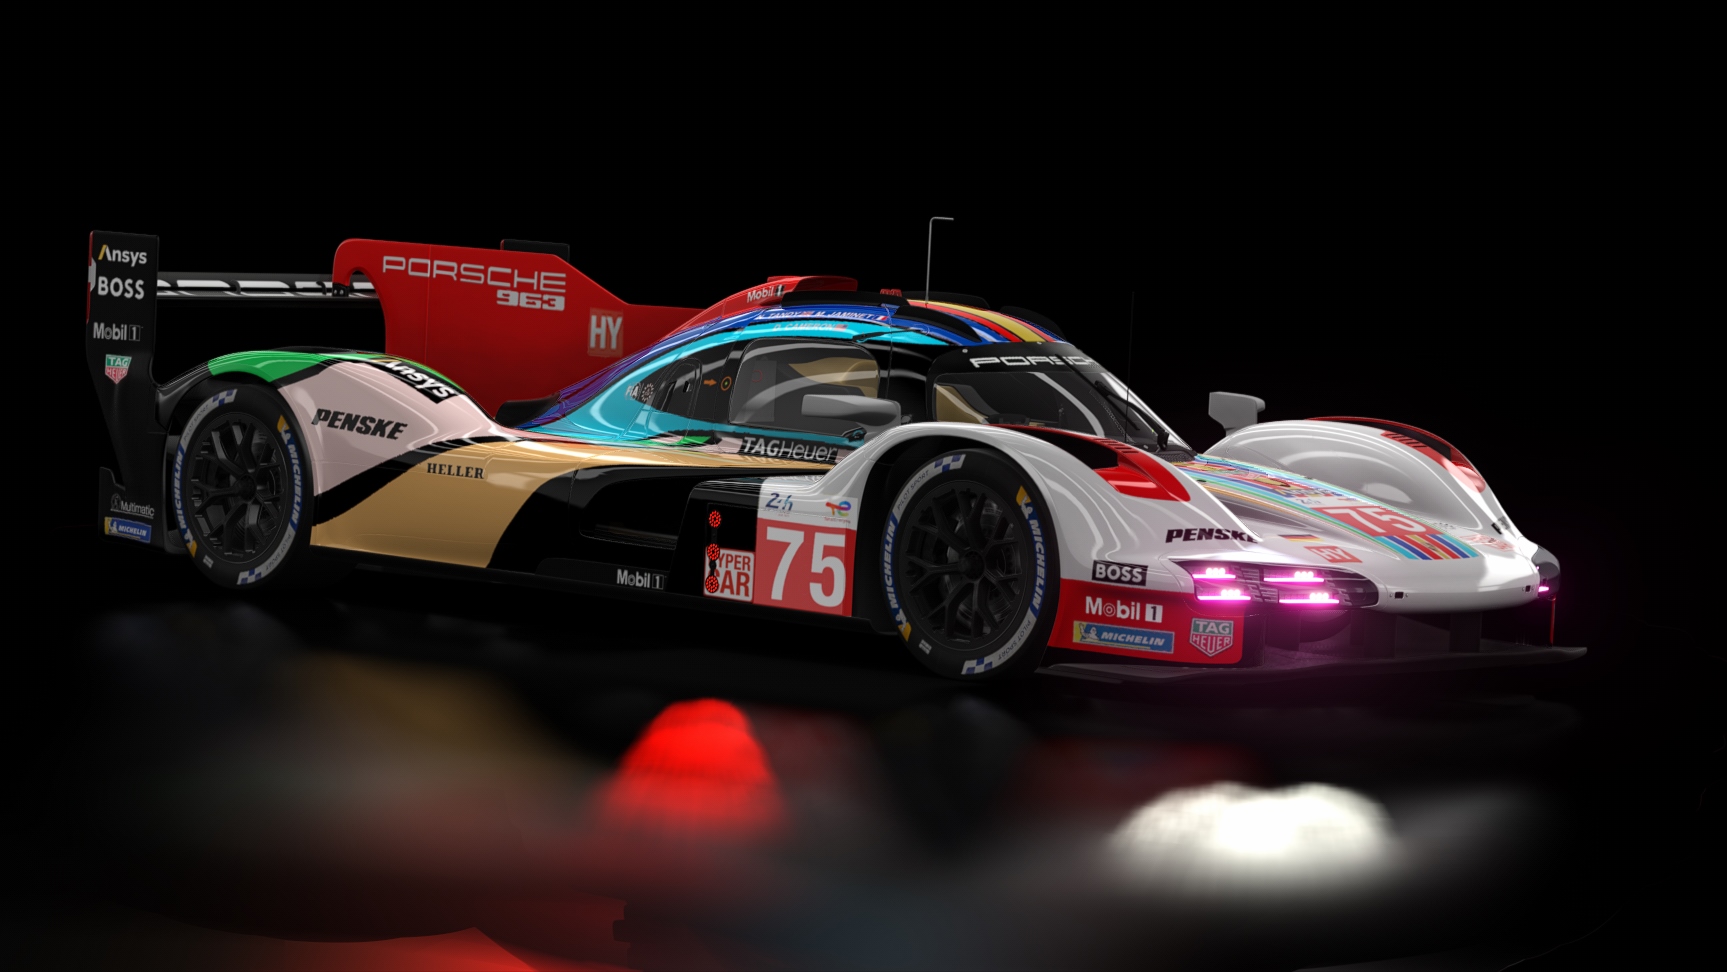 LMH - Porsche 963 2023, skin 2023 Le Mans Porsche Penske Motorsport 75